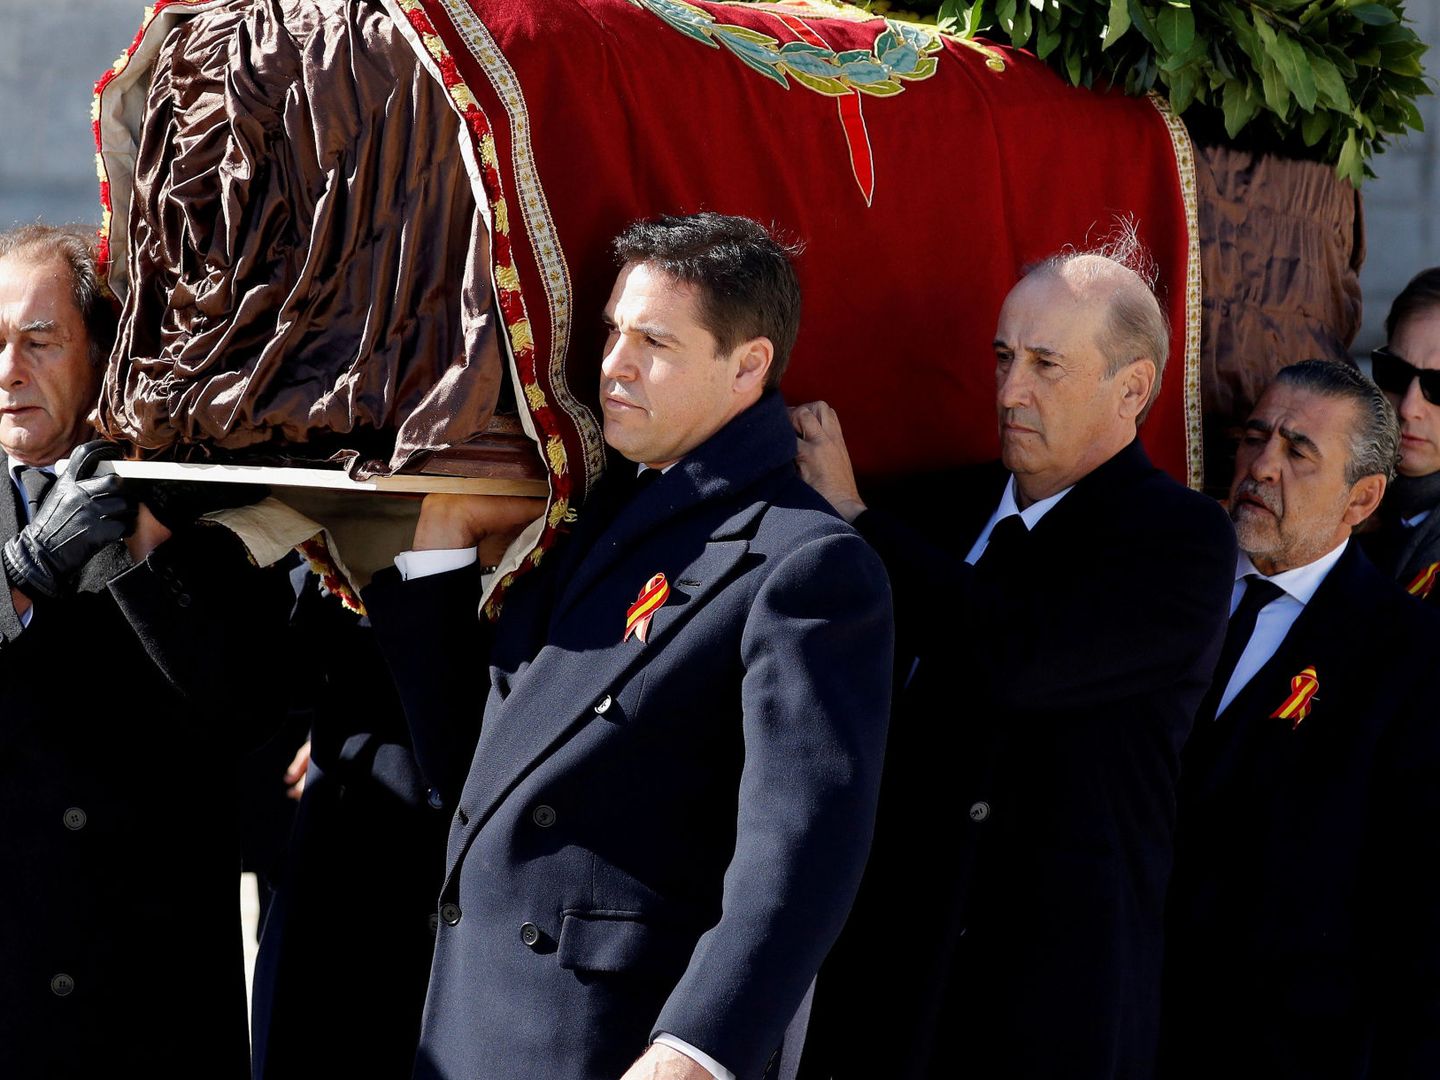 Jose Cristóbal Martínez-Bordiú, Luis Alfonso de Borbón Martínez-Bordiú, Francis Franco y Jaime Martínez-Bordiú, en el Valle de los Caídos. (Reuters)